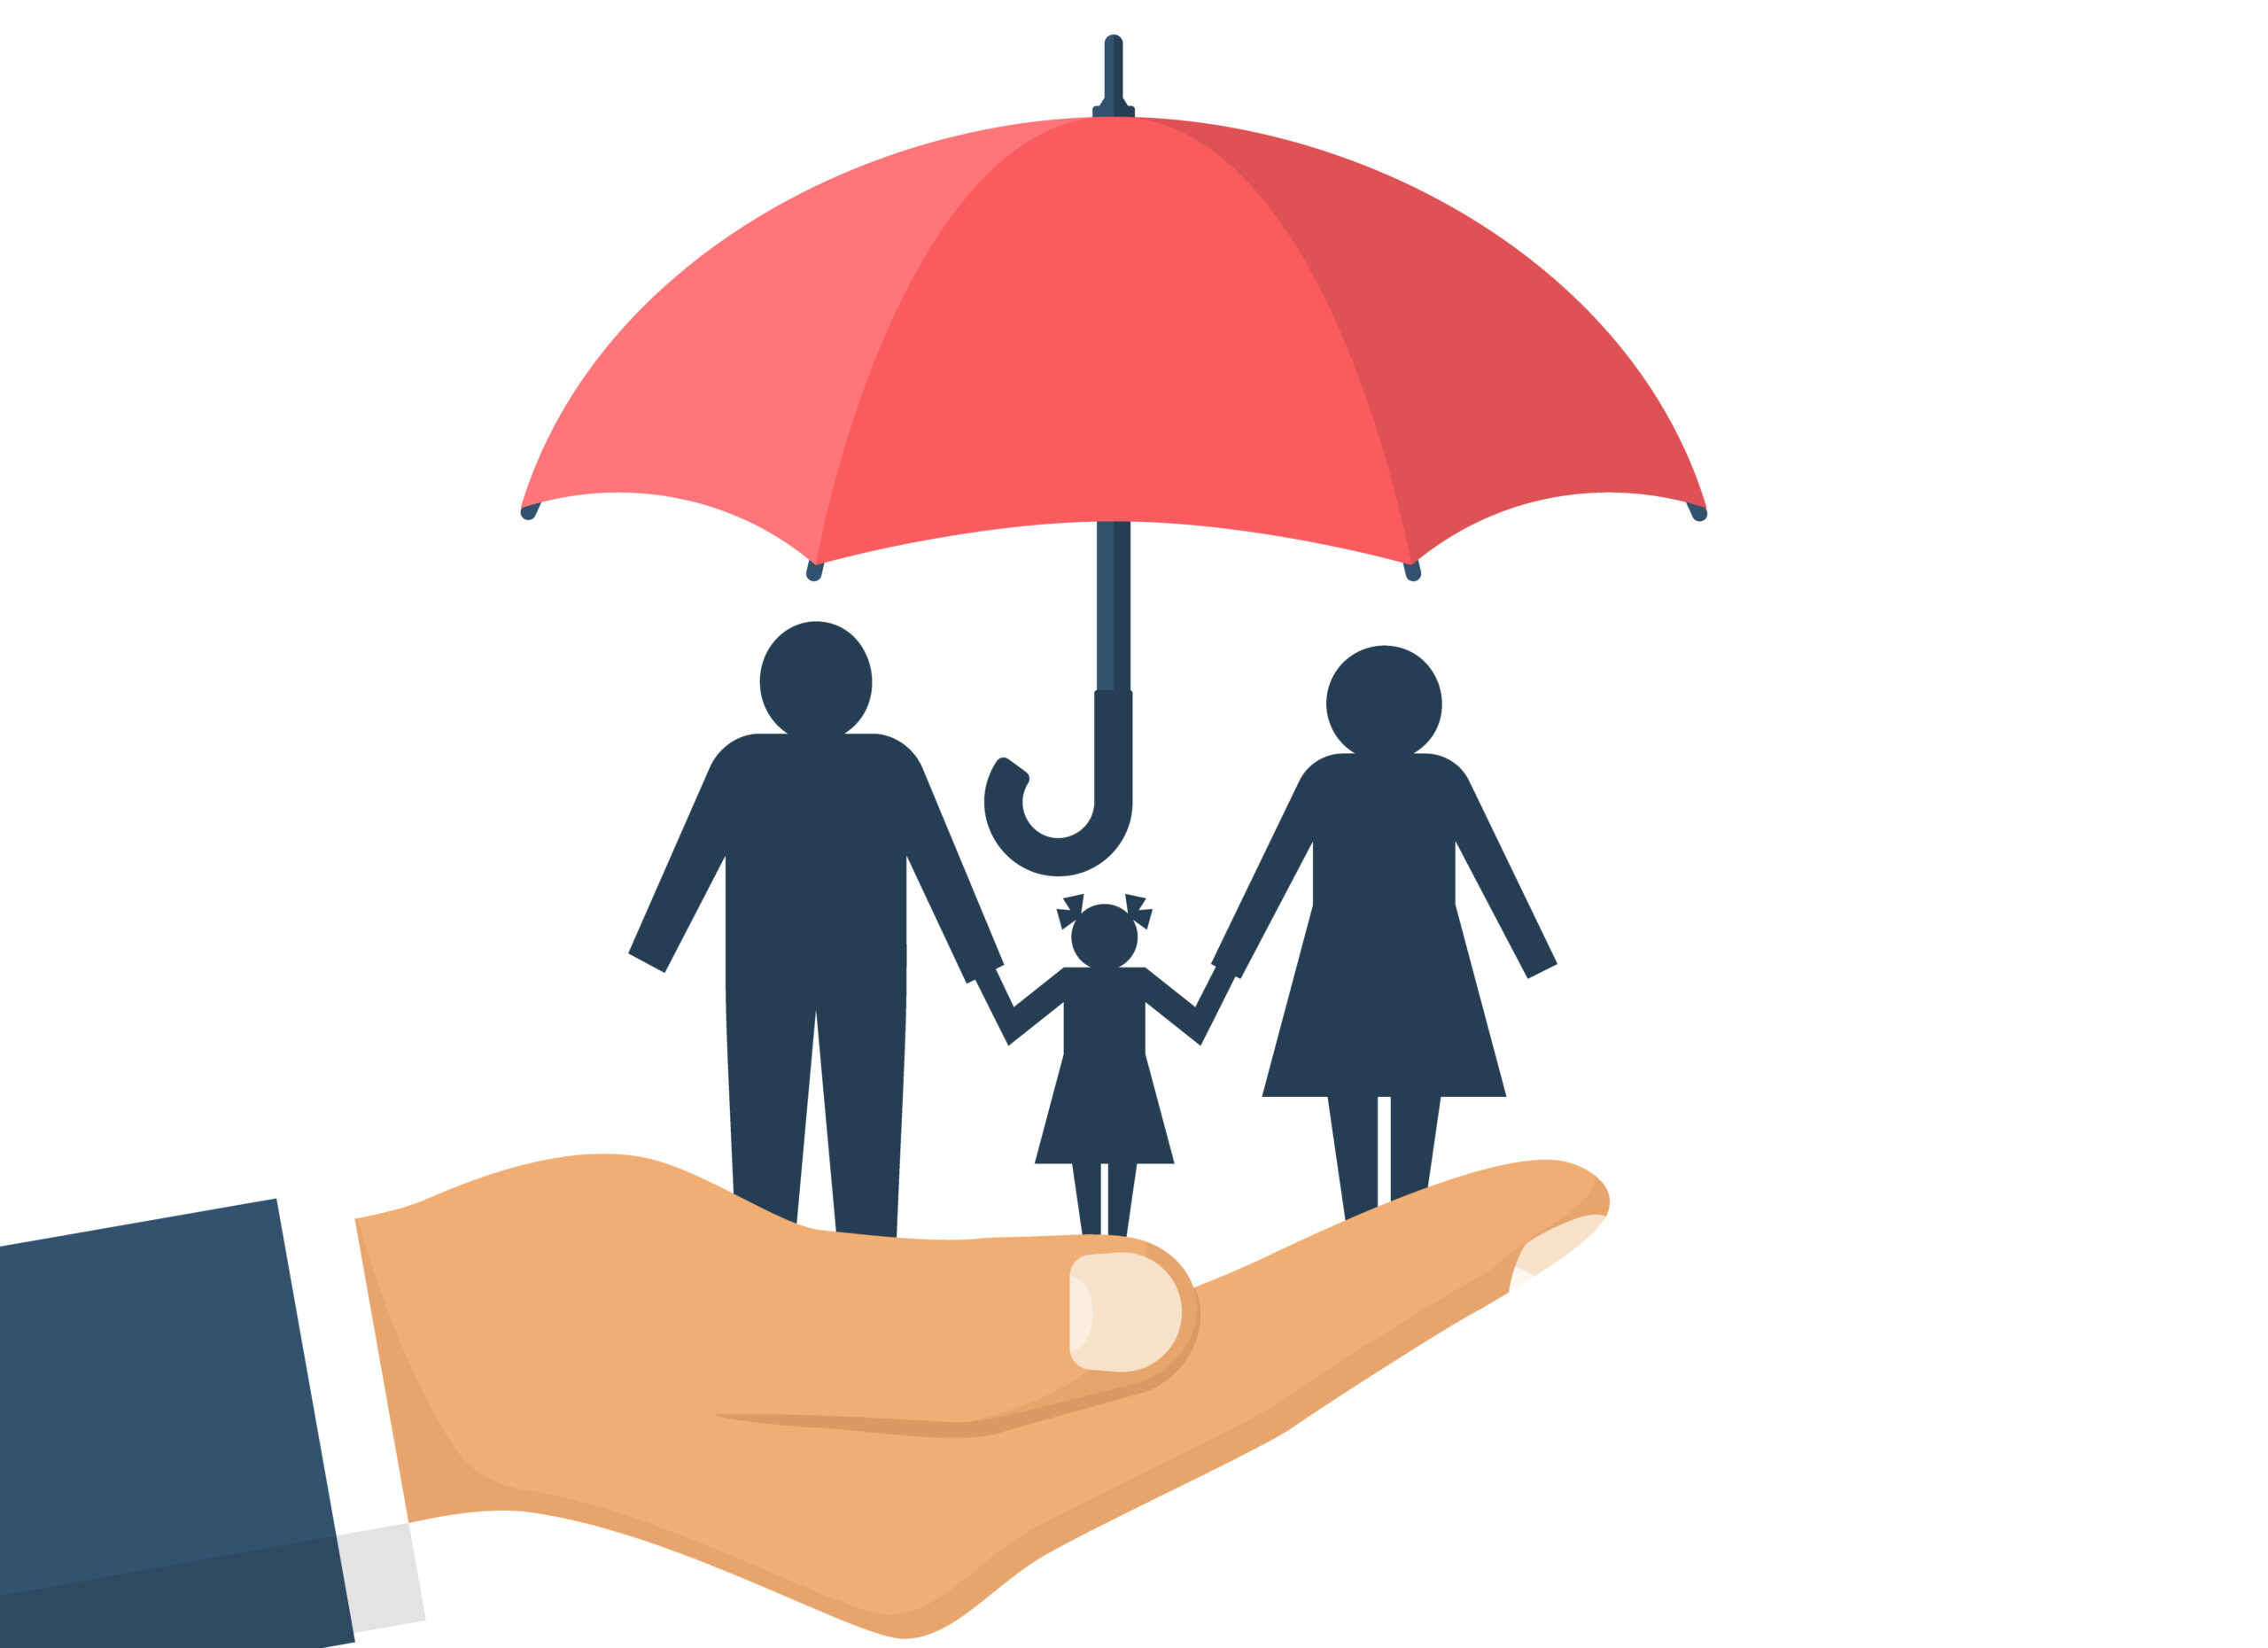 تصویر نشان‌دهنده یک خانواده است که تحت پوشش یک چتر بزرگ قرار گرفته‌اند، که دستی آن را نگه داشته است. این تصویر مفهومی قدرتمند از بیمه عمر و نقش آن در حمایت و امنیت خانواده‌ها را منتقل می‌کند. چتر نمادی از حفاظت است و نشان می‌دهد که چگونه بیمه عمر می‌تواند در برابر حوادث غیرمترقبه و مشکلات مالی آینده، سپری برای خانواده‌ها باشد. این بیمه نه تنها در صورت فوت بیمه‌گذار، حمایت مالی برای بازماندگان فراهم می‌کند، بلکه می‌تواند شامل پوشش‌های اضافی مانند بیمه نقص عضو، بیمه بیکاری و سایر موارد باشد که به حفظ استاندارد زندگی خانواده در شرایط دشوار کمک می‌کند.